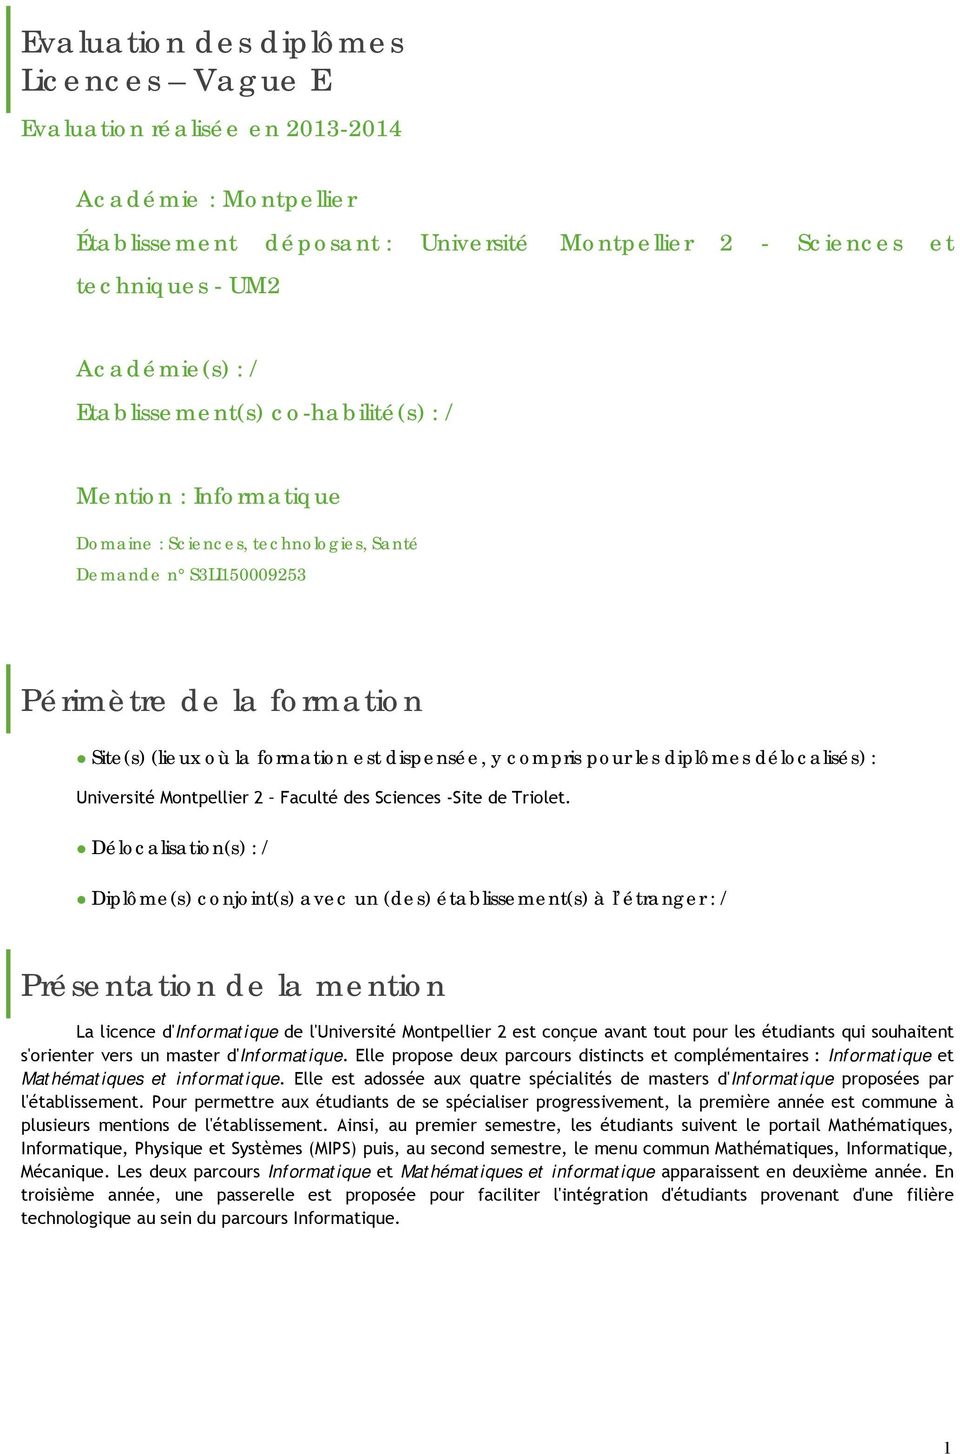 compris pour les diplômes délocalisés) : Université Montpellier 2 Faculté des Sciences -Site de Triolet.